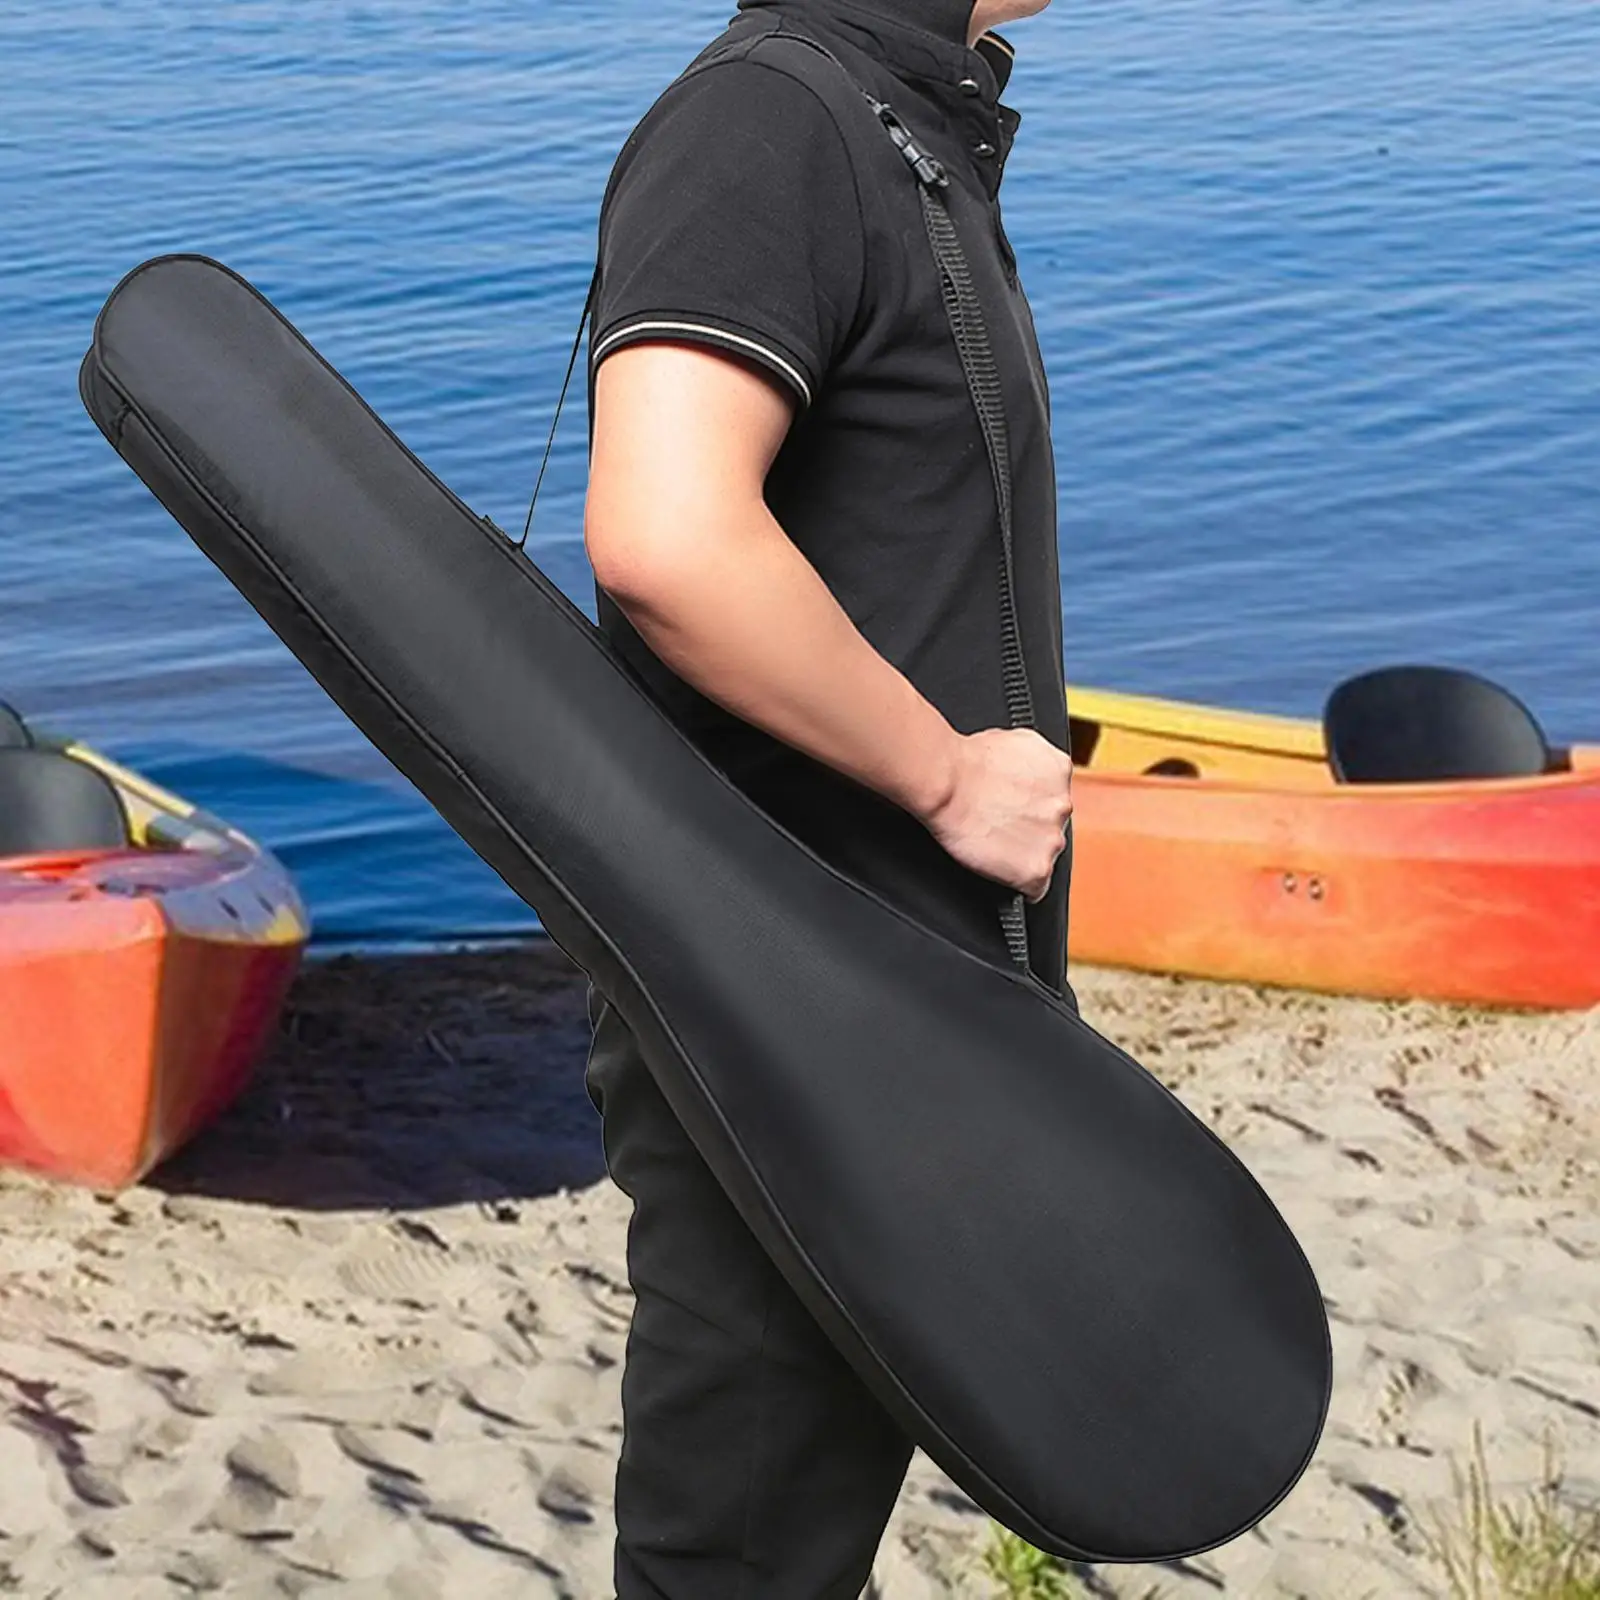 Kayak Paddle Bag Durable Wear Resistant for Split Paddle Kayak Paddle Cover with Handle Paddle Carrier Paddle Storage Bag Holder